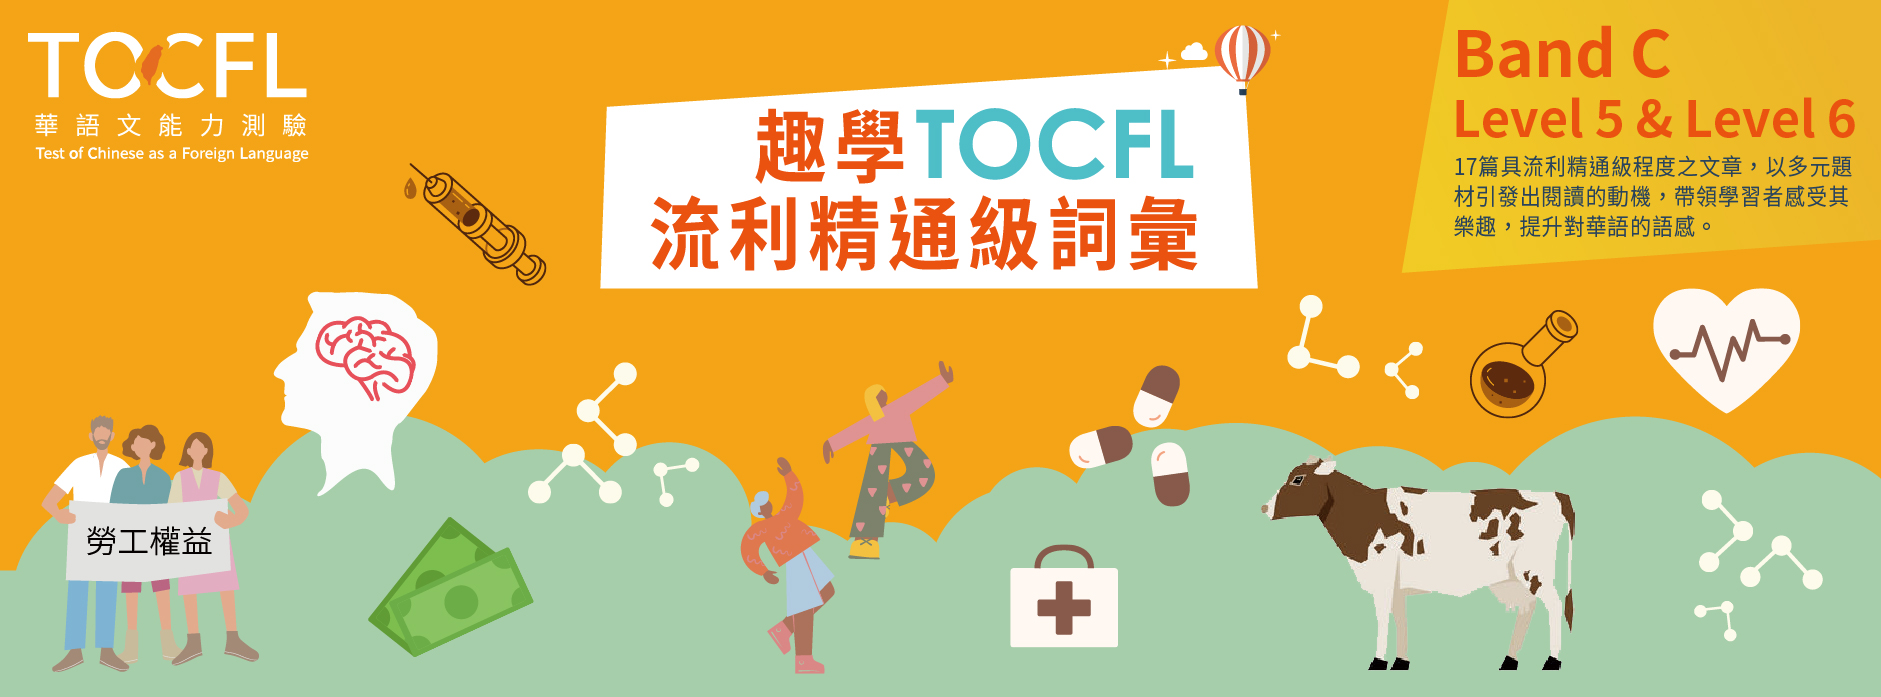 Giáo trình học tiếng Trung phồn thể 趣學TOCFL流利精通級詞彙 Band C level 5 & level 6